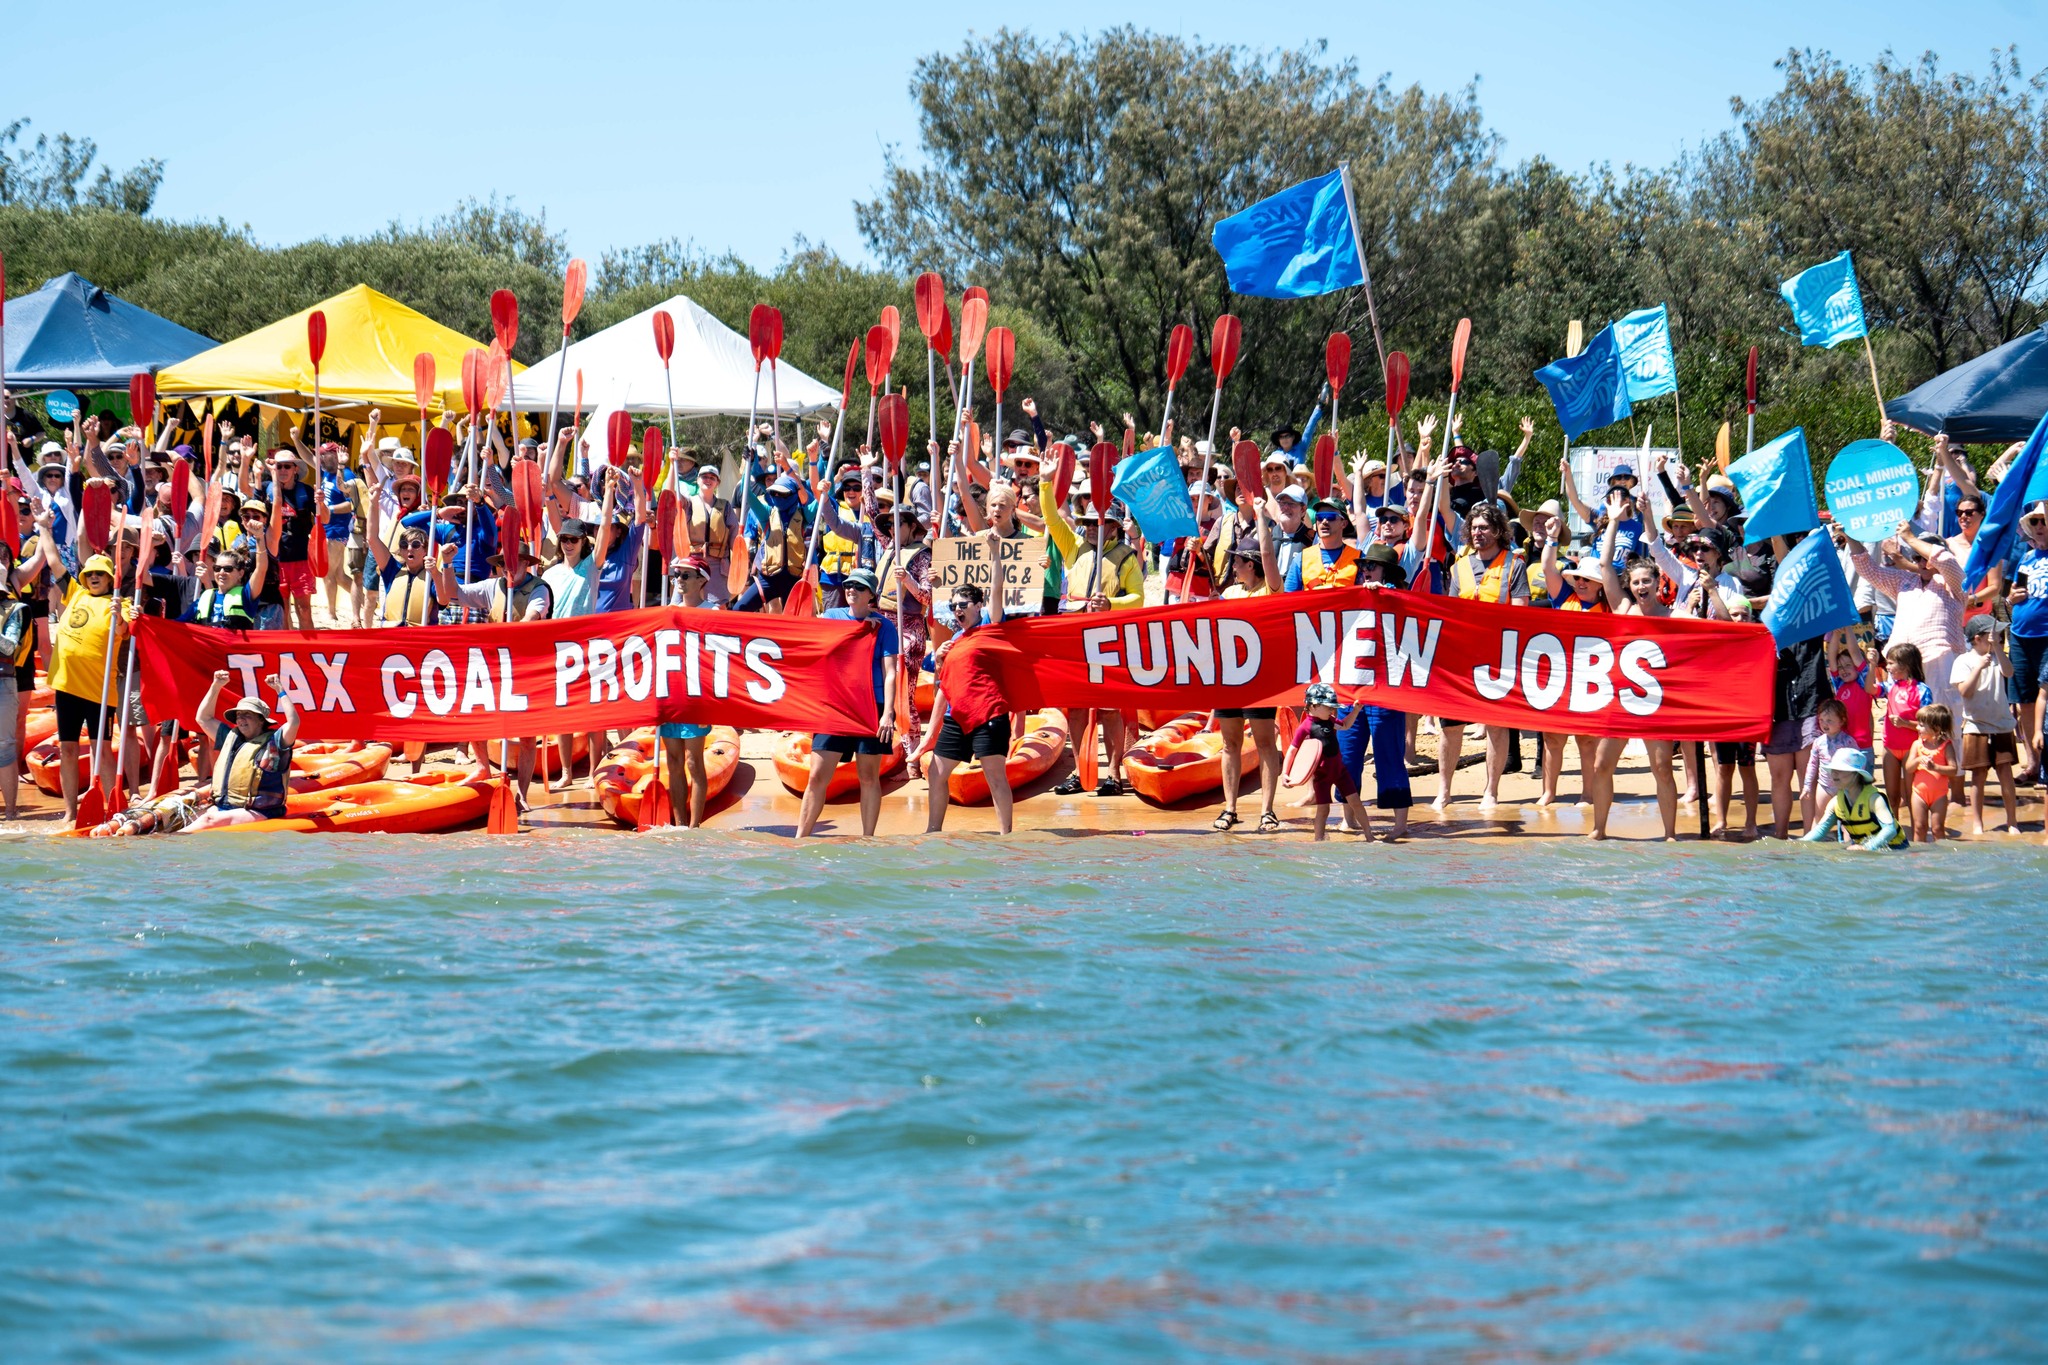 Tax coal profits, fund new jobs